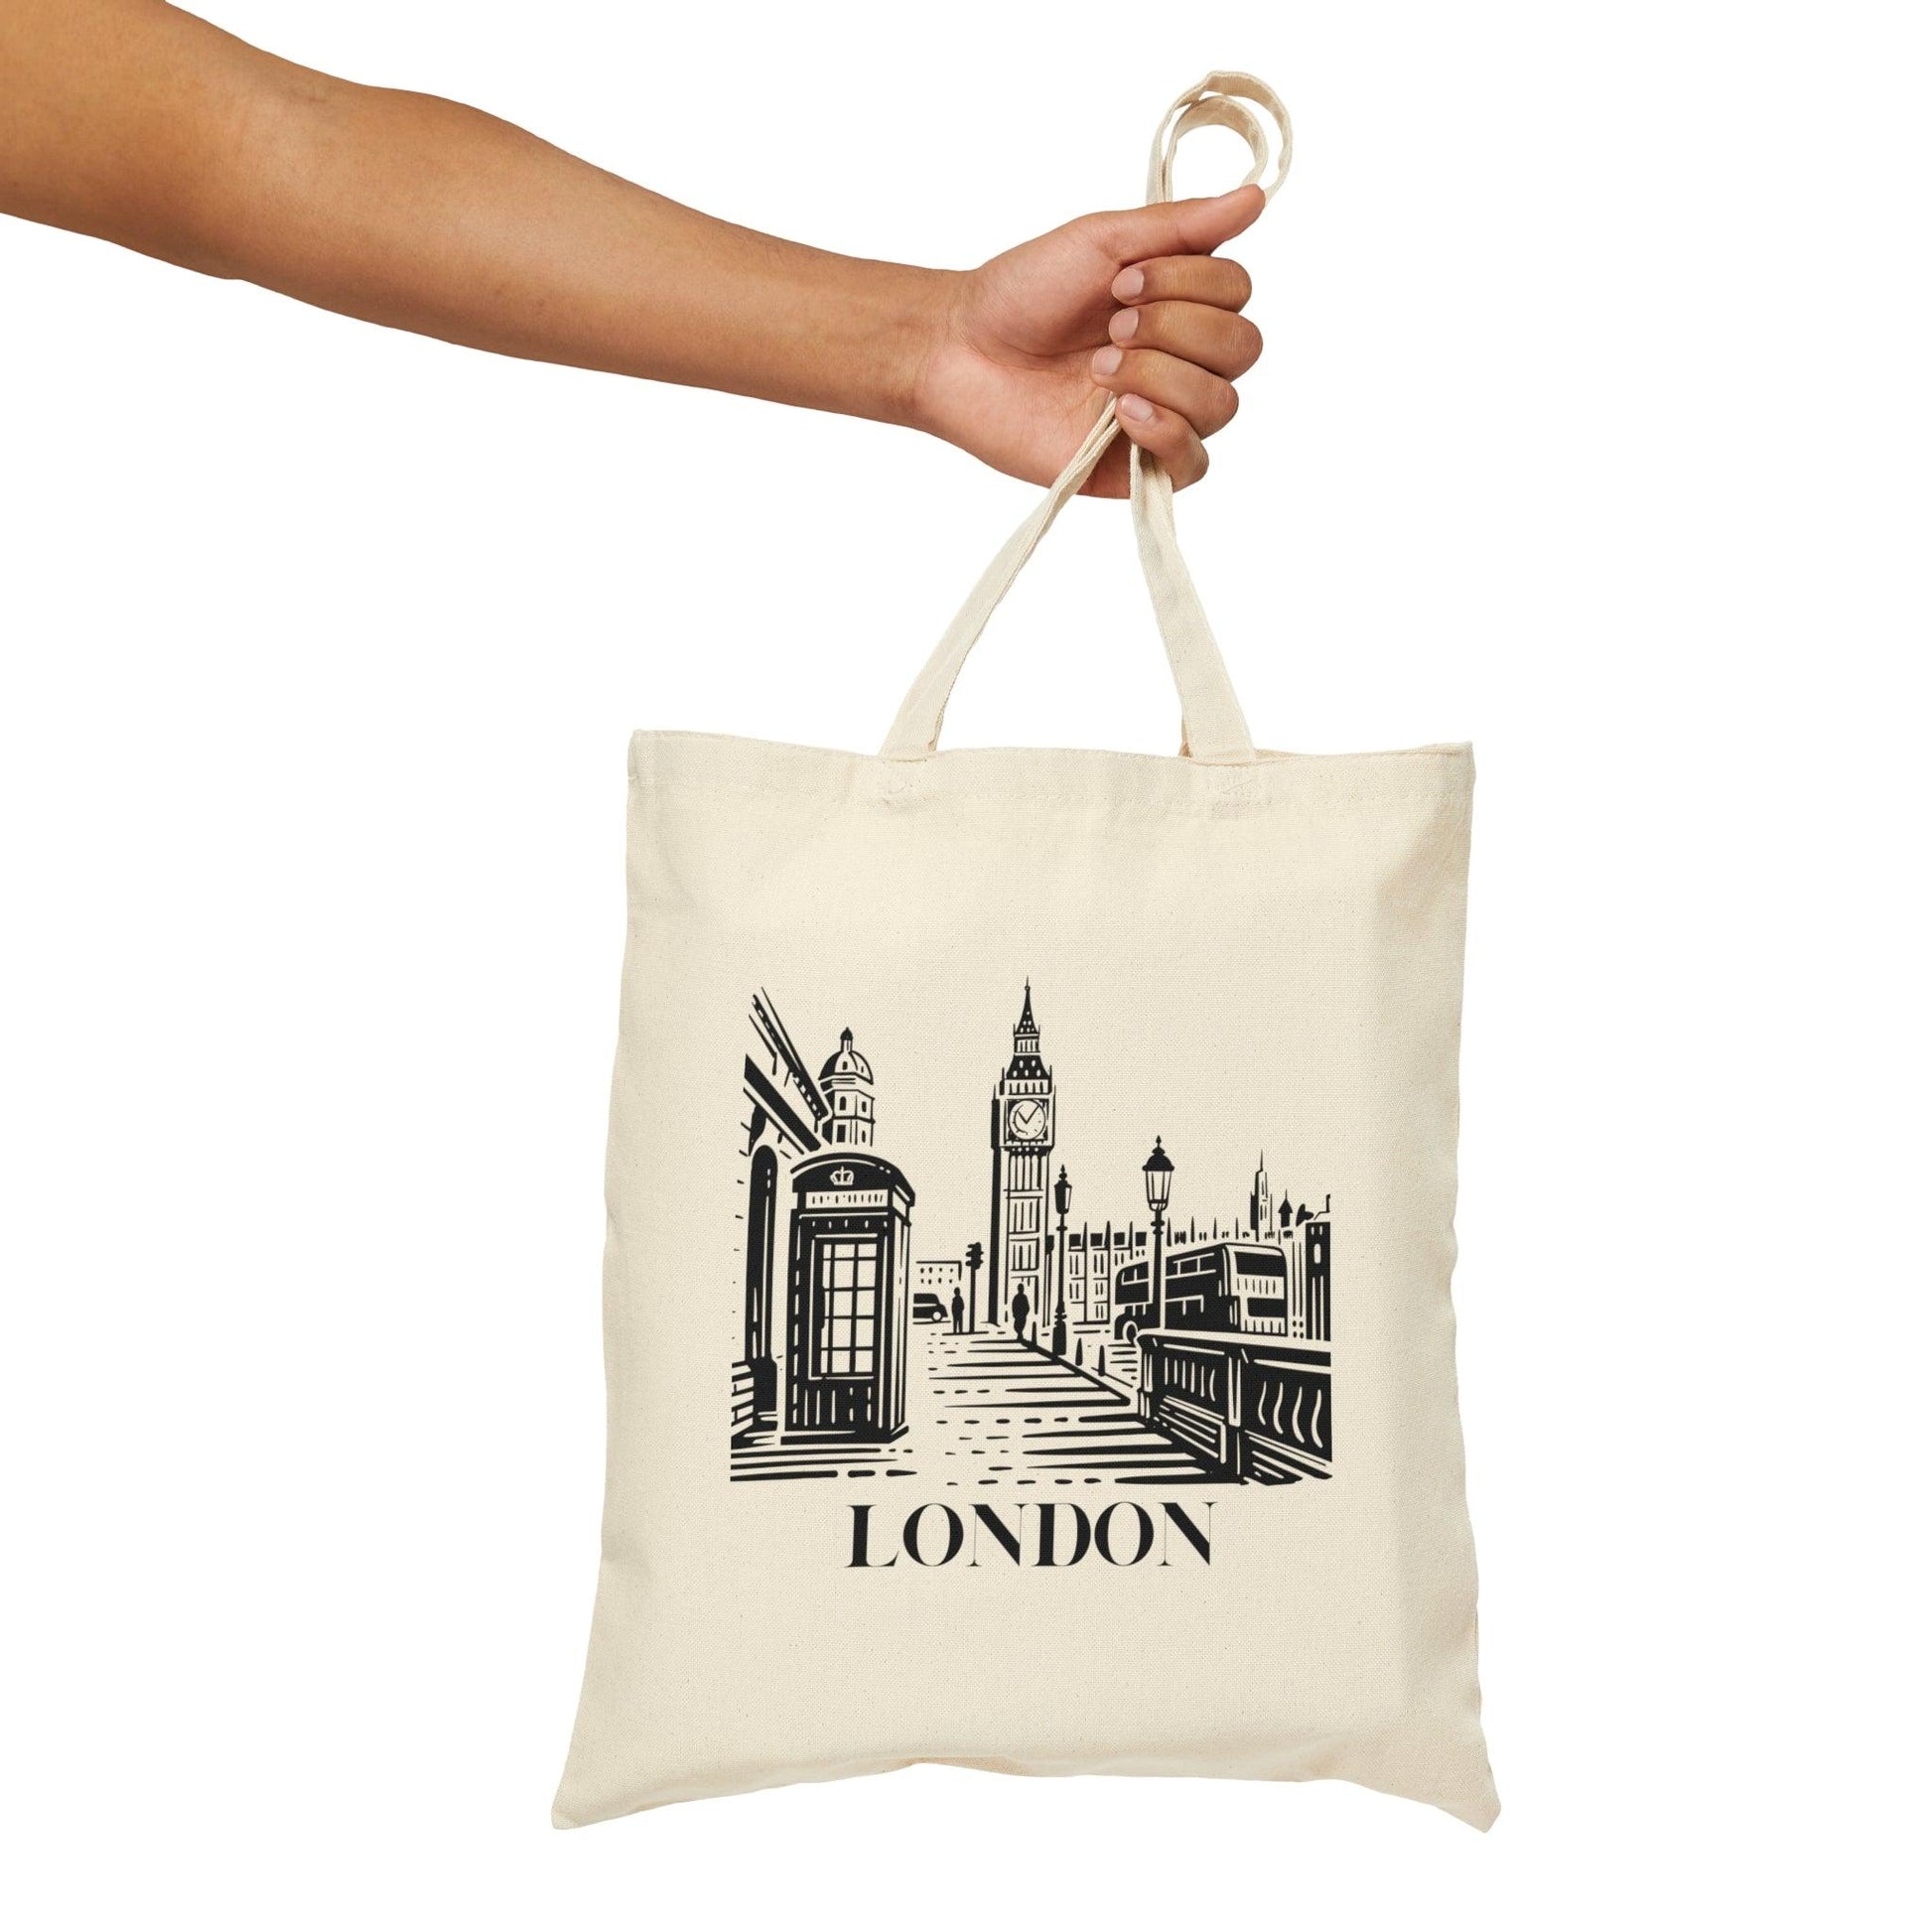 London Canvas Tote Bag - Departures Print Shop